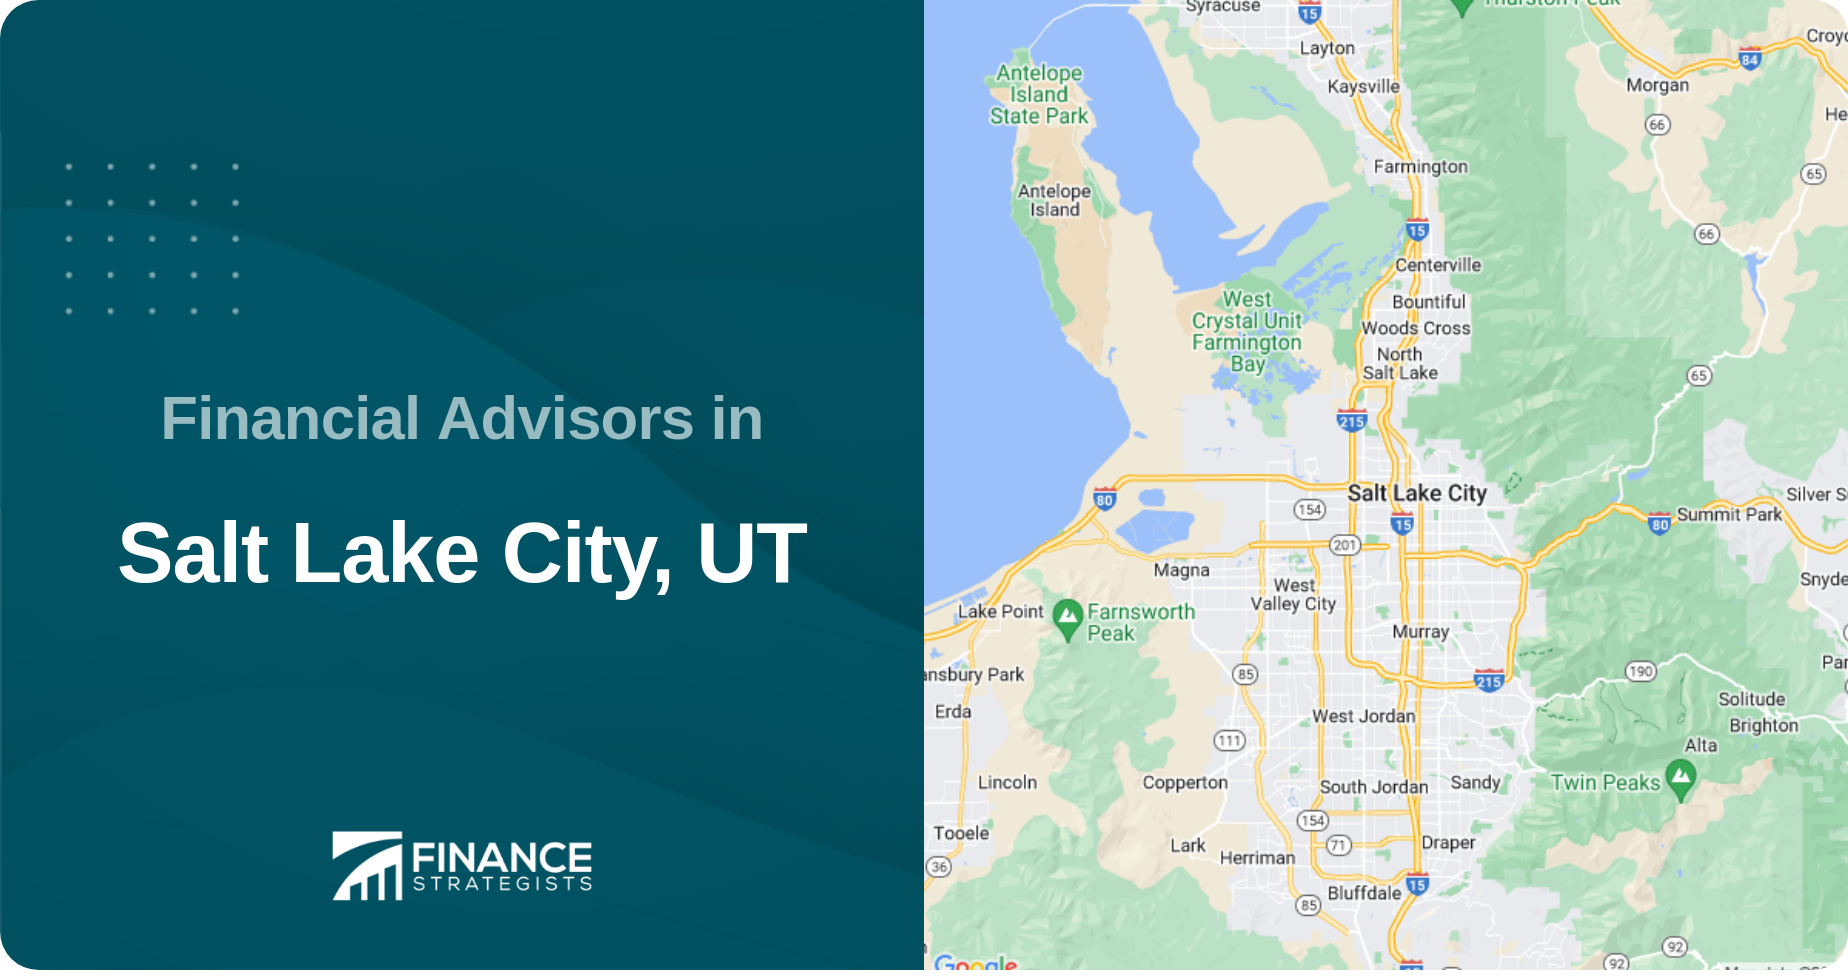 Financial Advisors in Salt Lake City, UT